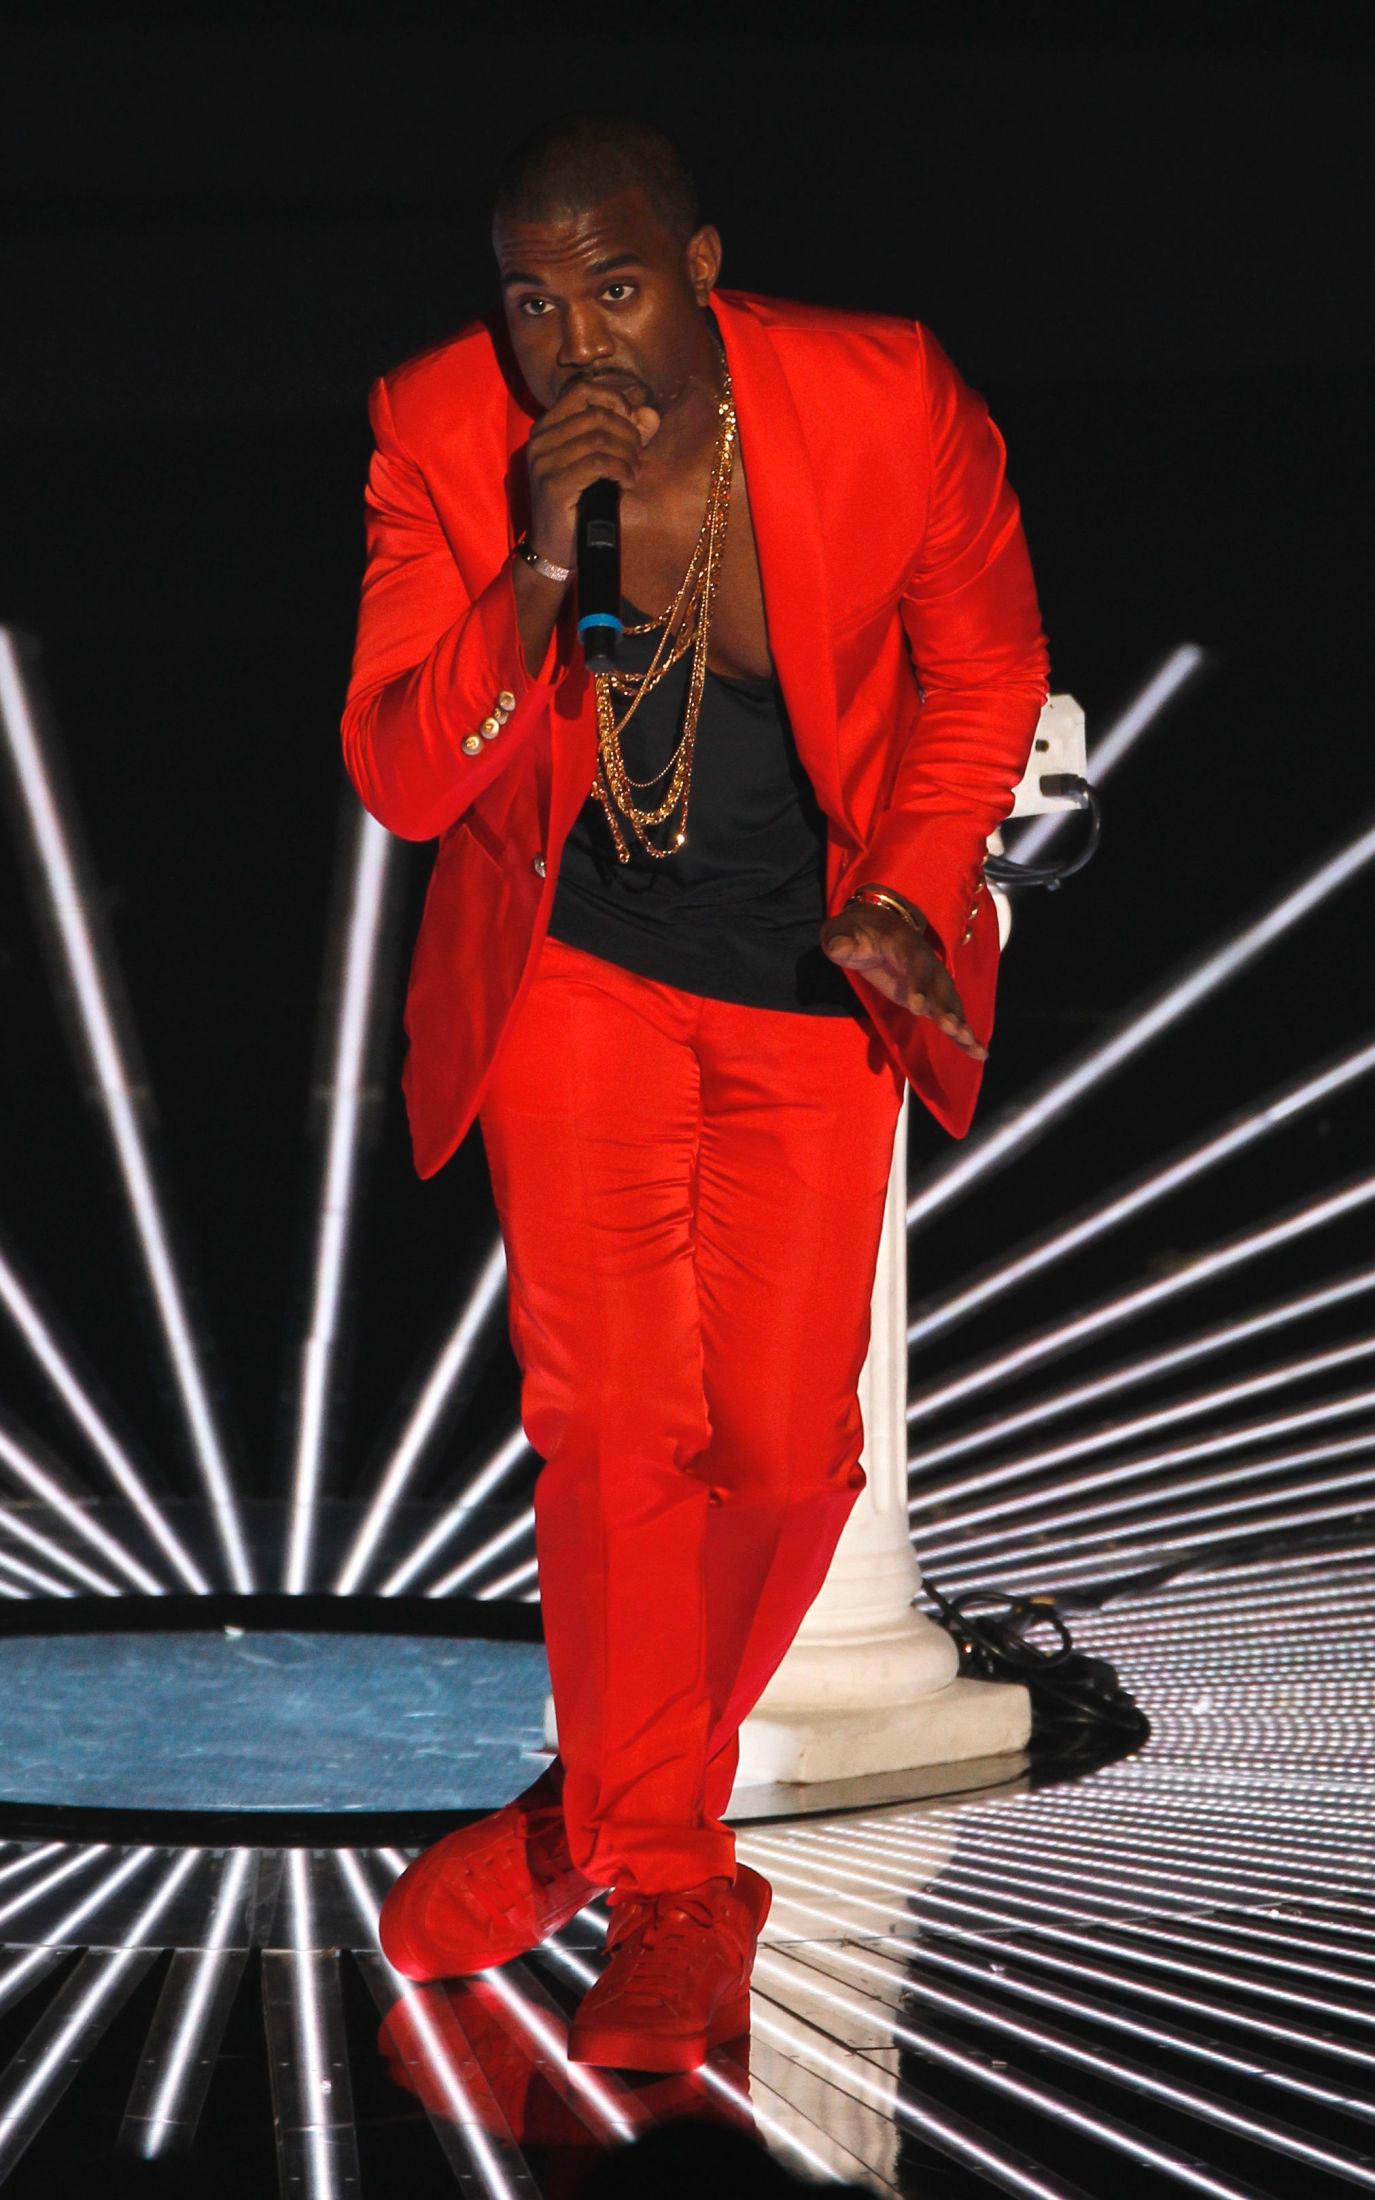 YNDLINGSFARGE: Rød var en av favorittene til Kanye West. Her fra MTV Video Music Awards i 2010. Foto: Reuters